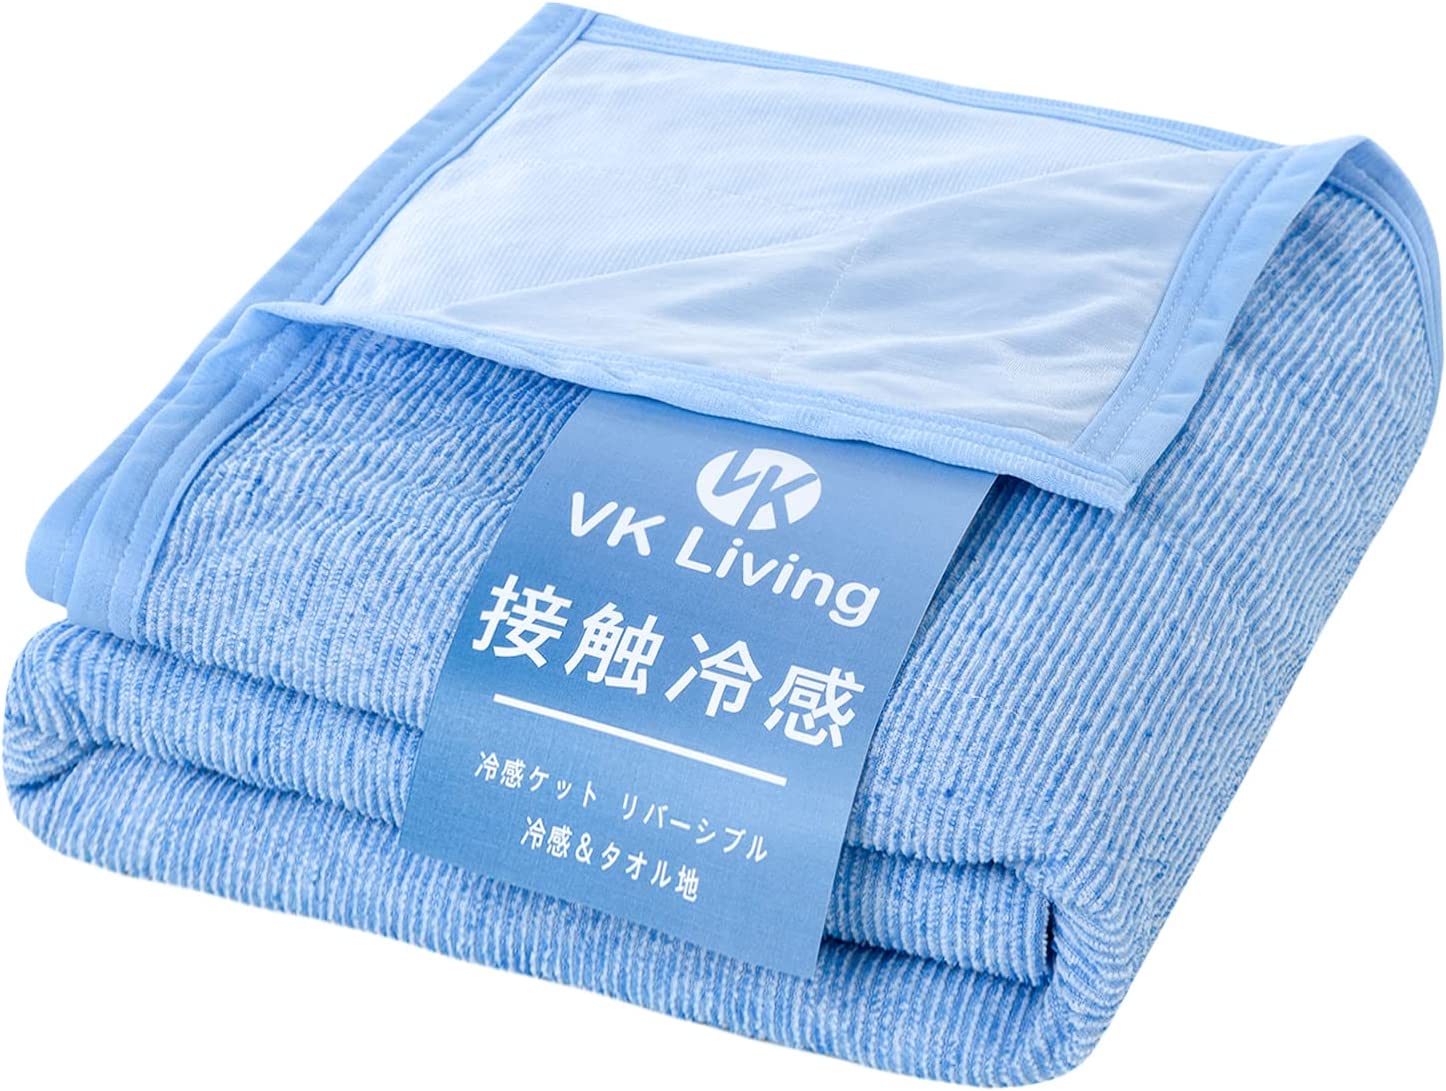 【日本代購】VK Living 毛巾毯觸感清涼夏季用單人用涼爽可兩面穿冷感&毛巾質地140×190厘米輕量可整體清洗吸濕速乾涼毯藍色